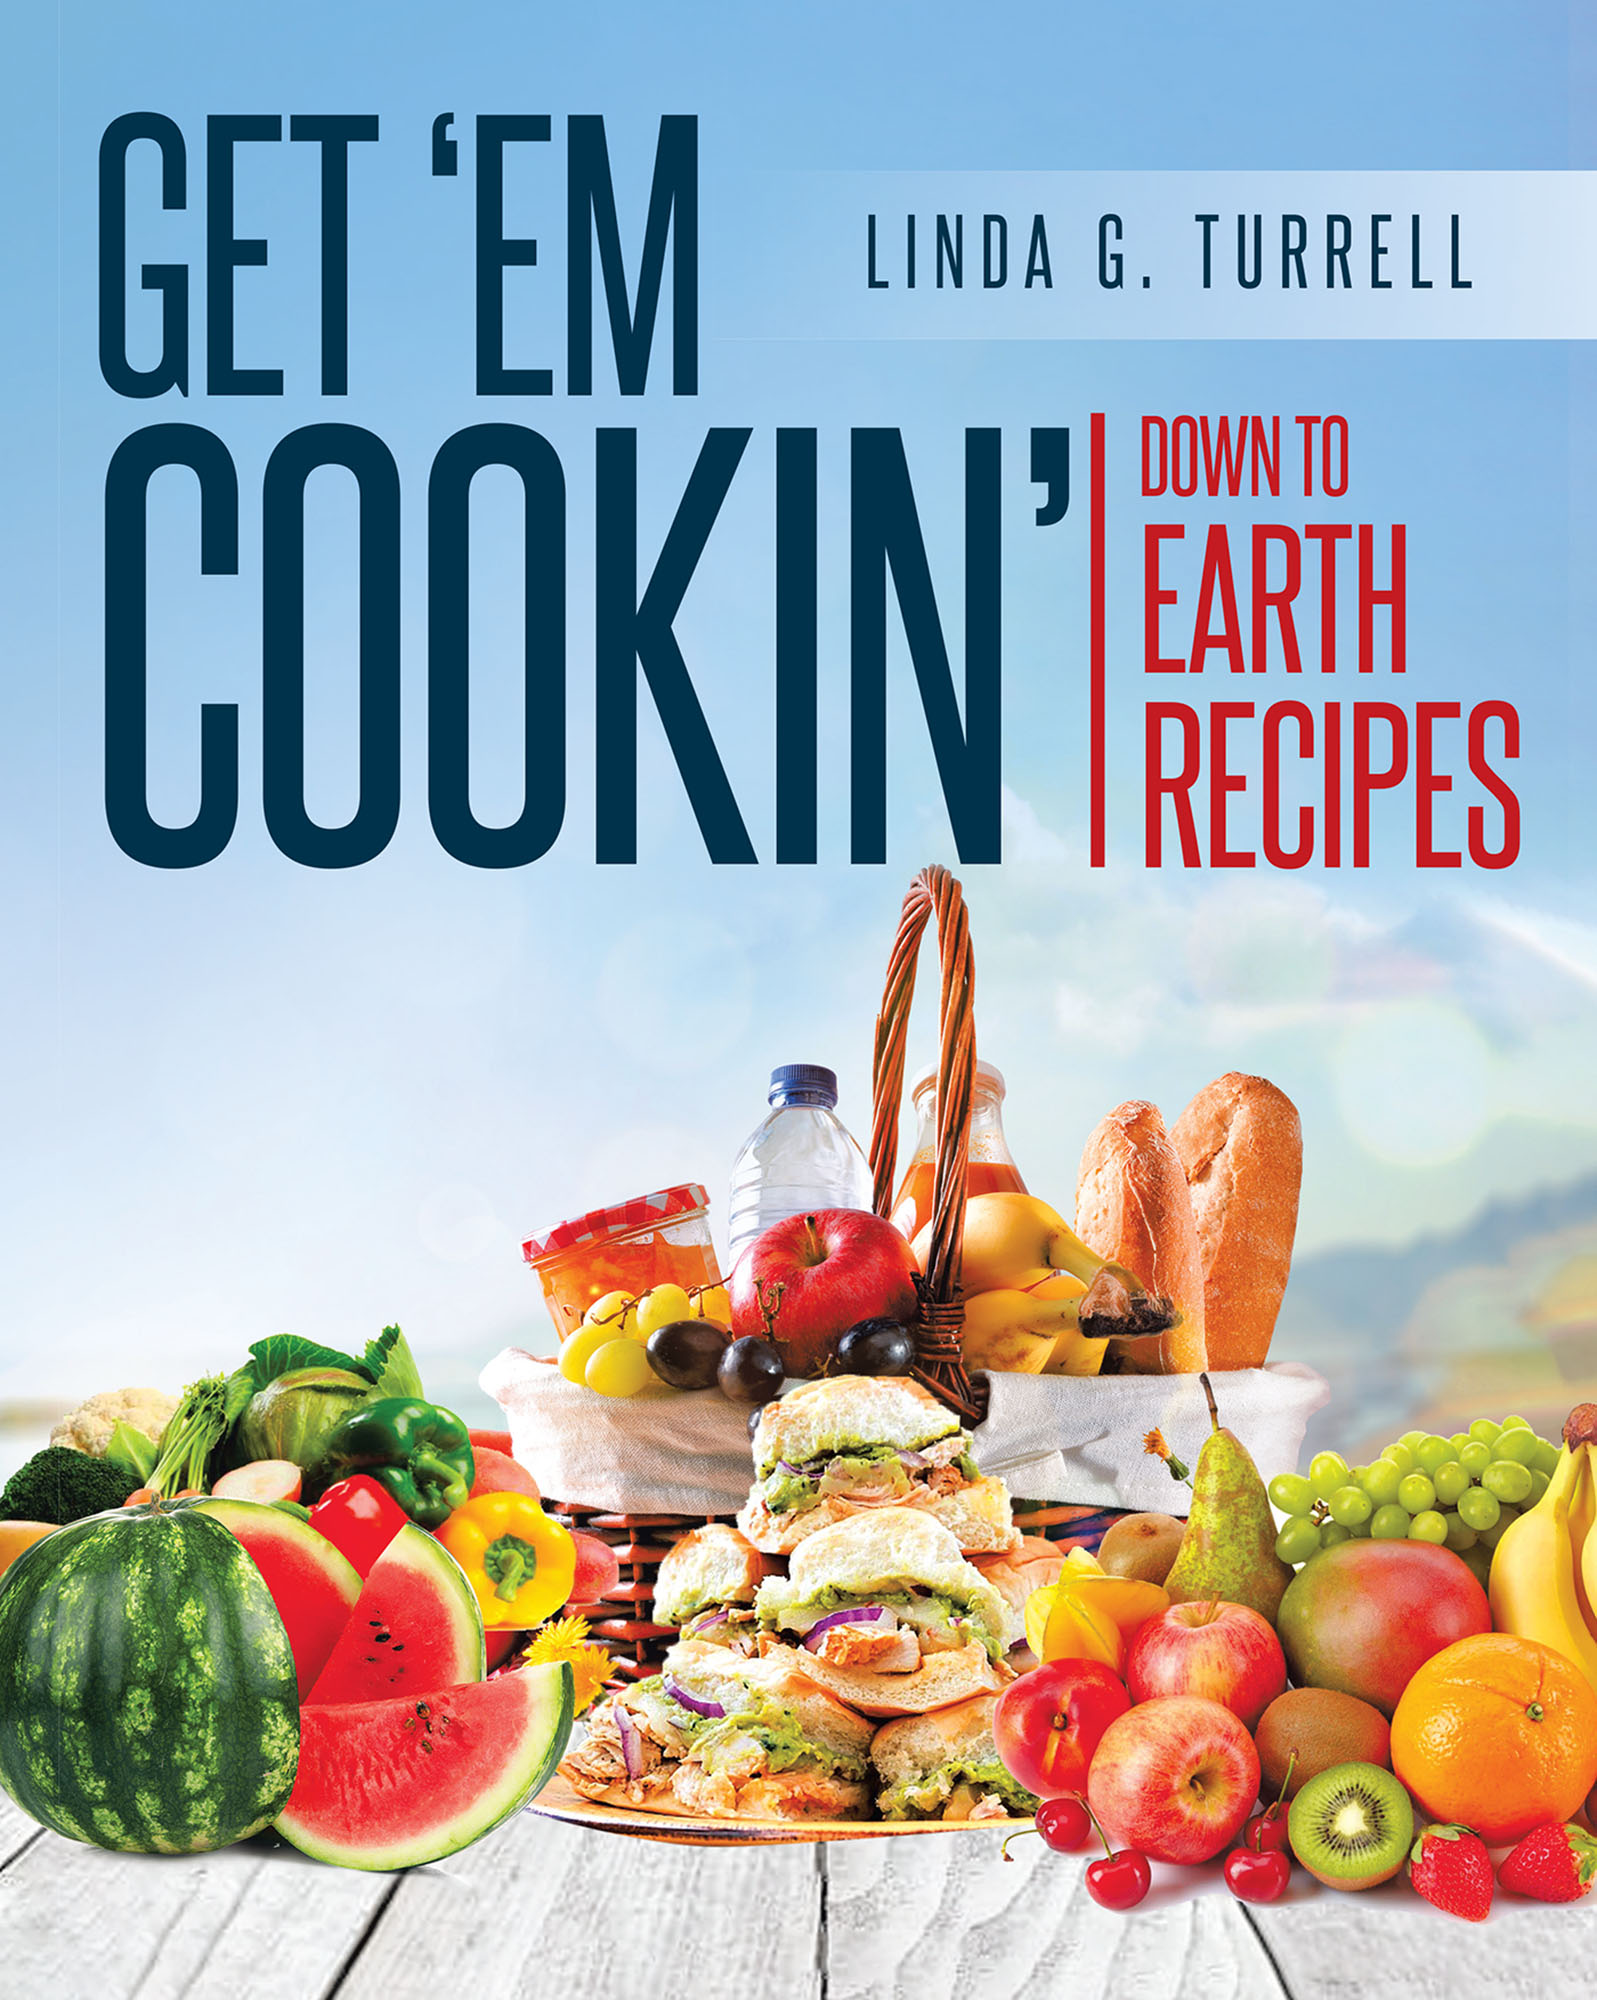 Get 'em Cookin' Cover Image